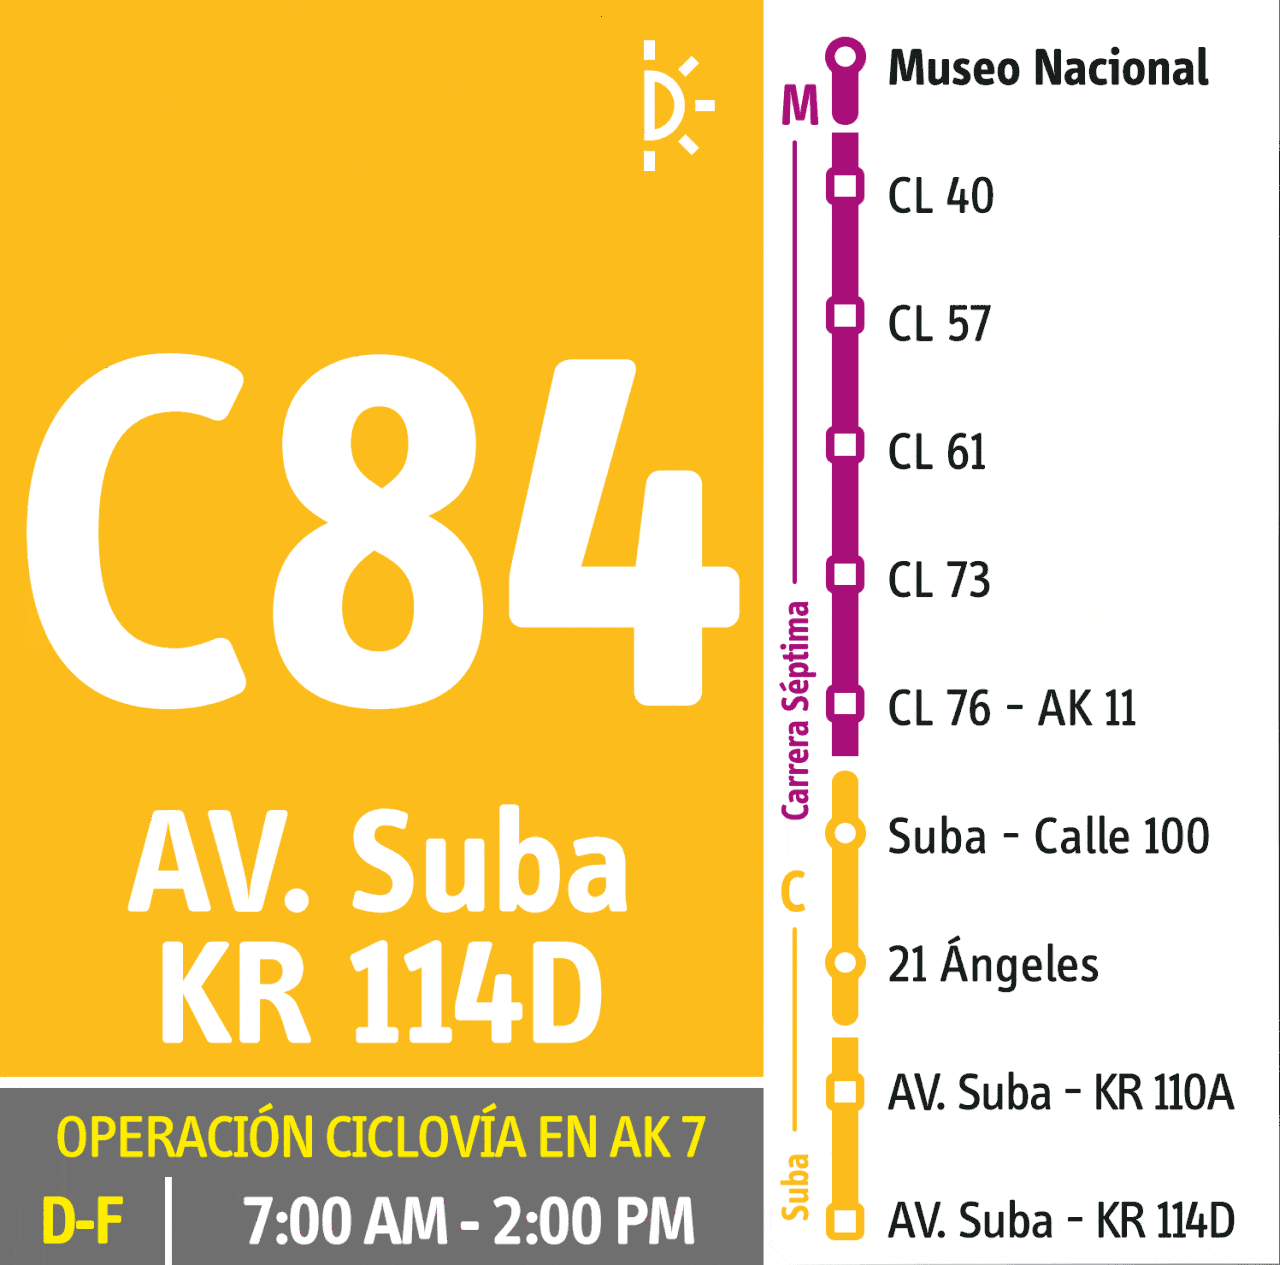 Bus dual C84-M84 - funcionamiento durante ciclovía